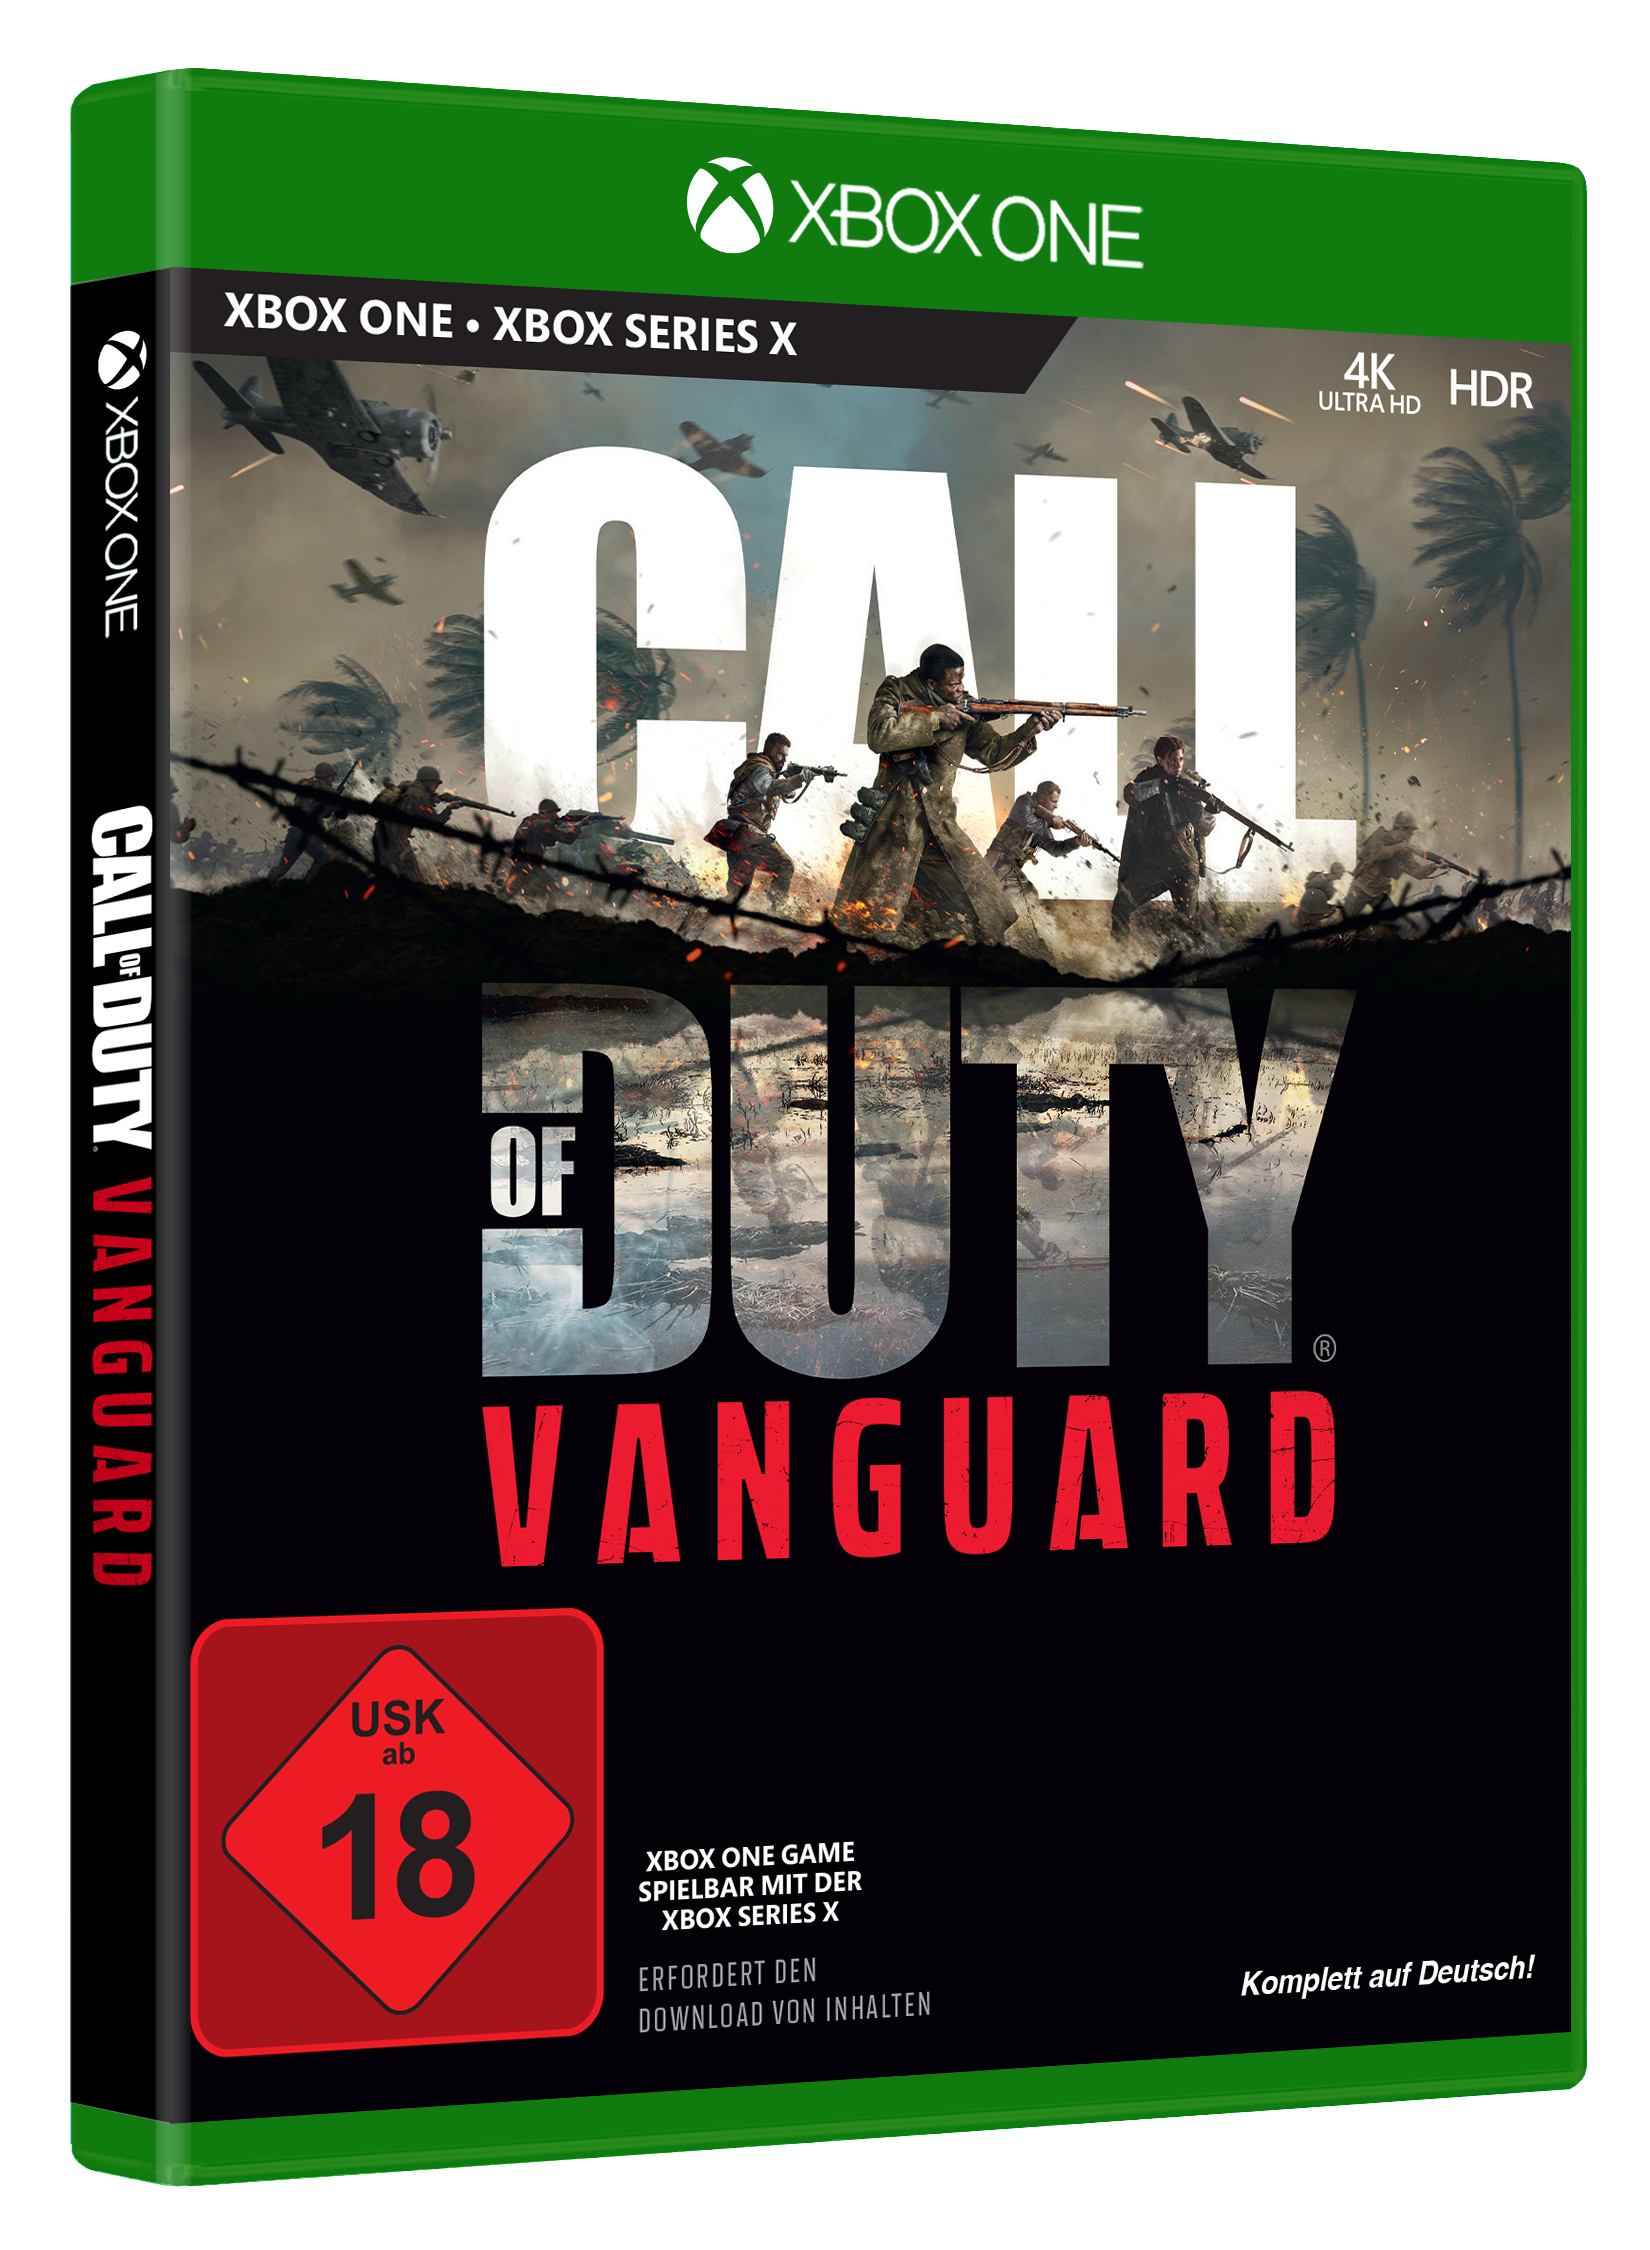 of One] Call Vanguard [Xbox - Duty: